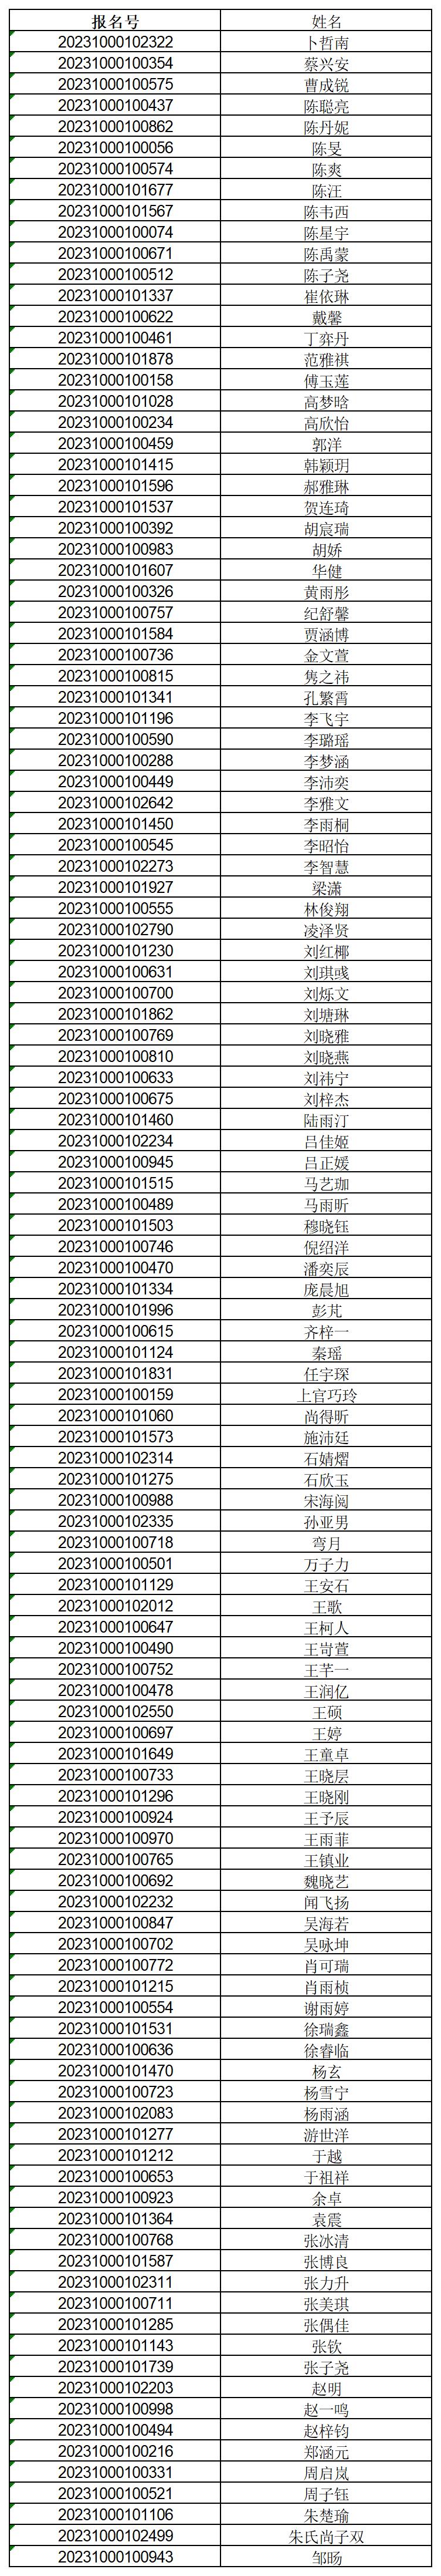 夏令营0619-系统报名名单-20230623-投票_公示版本(4).jpg